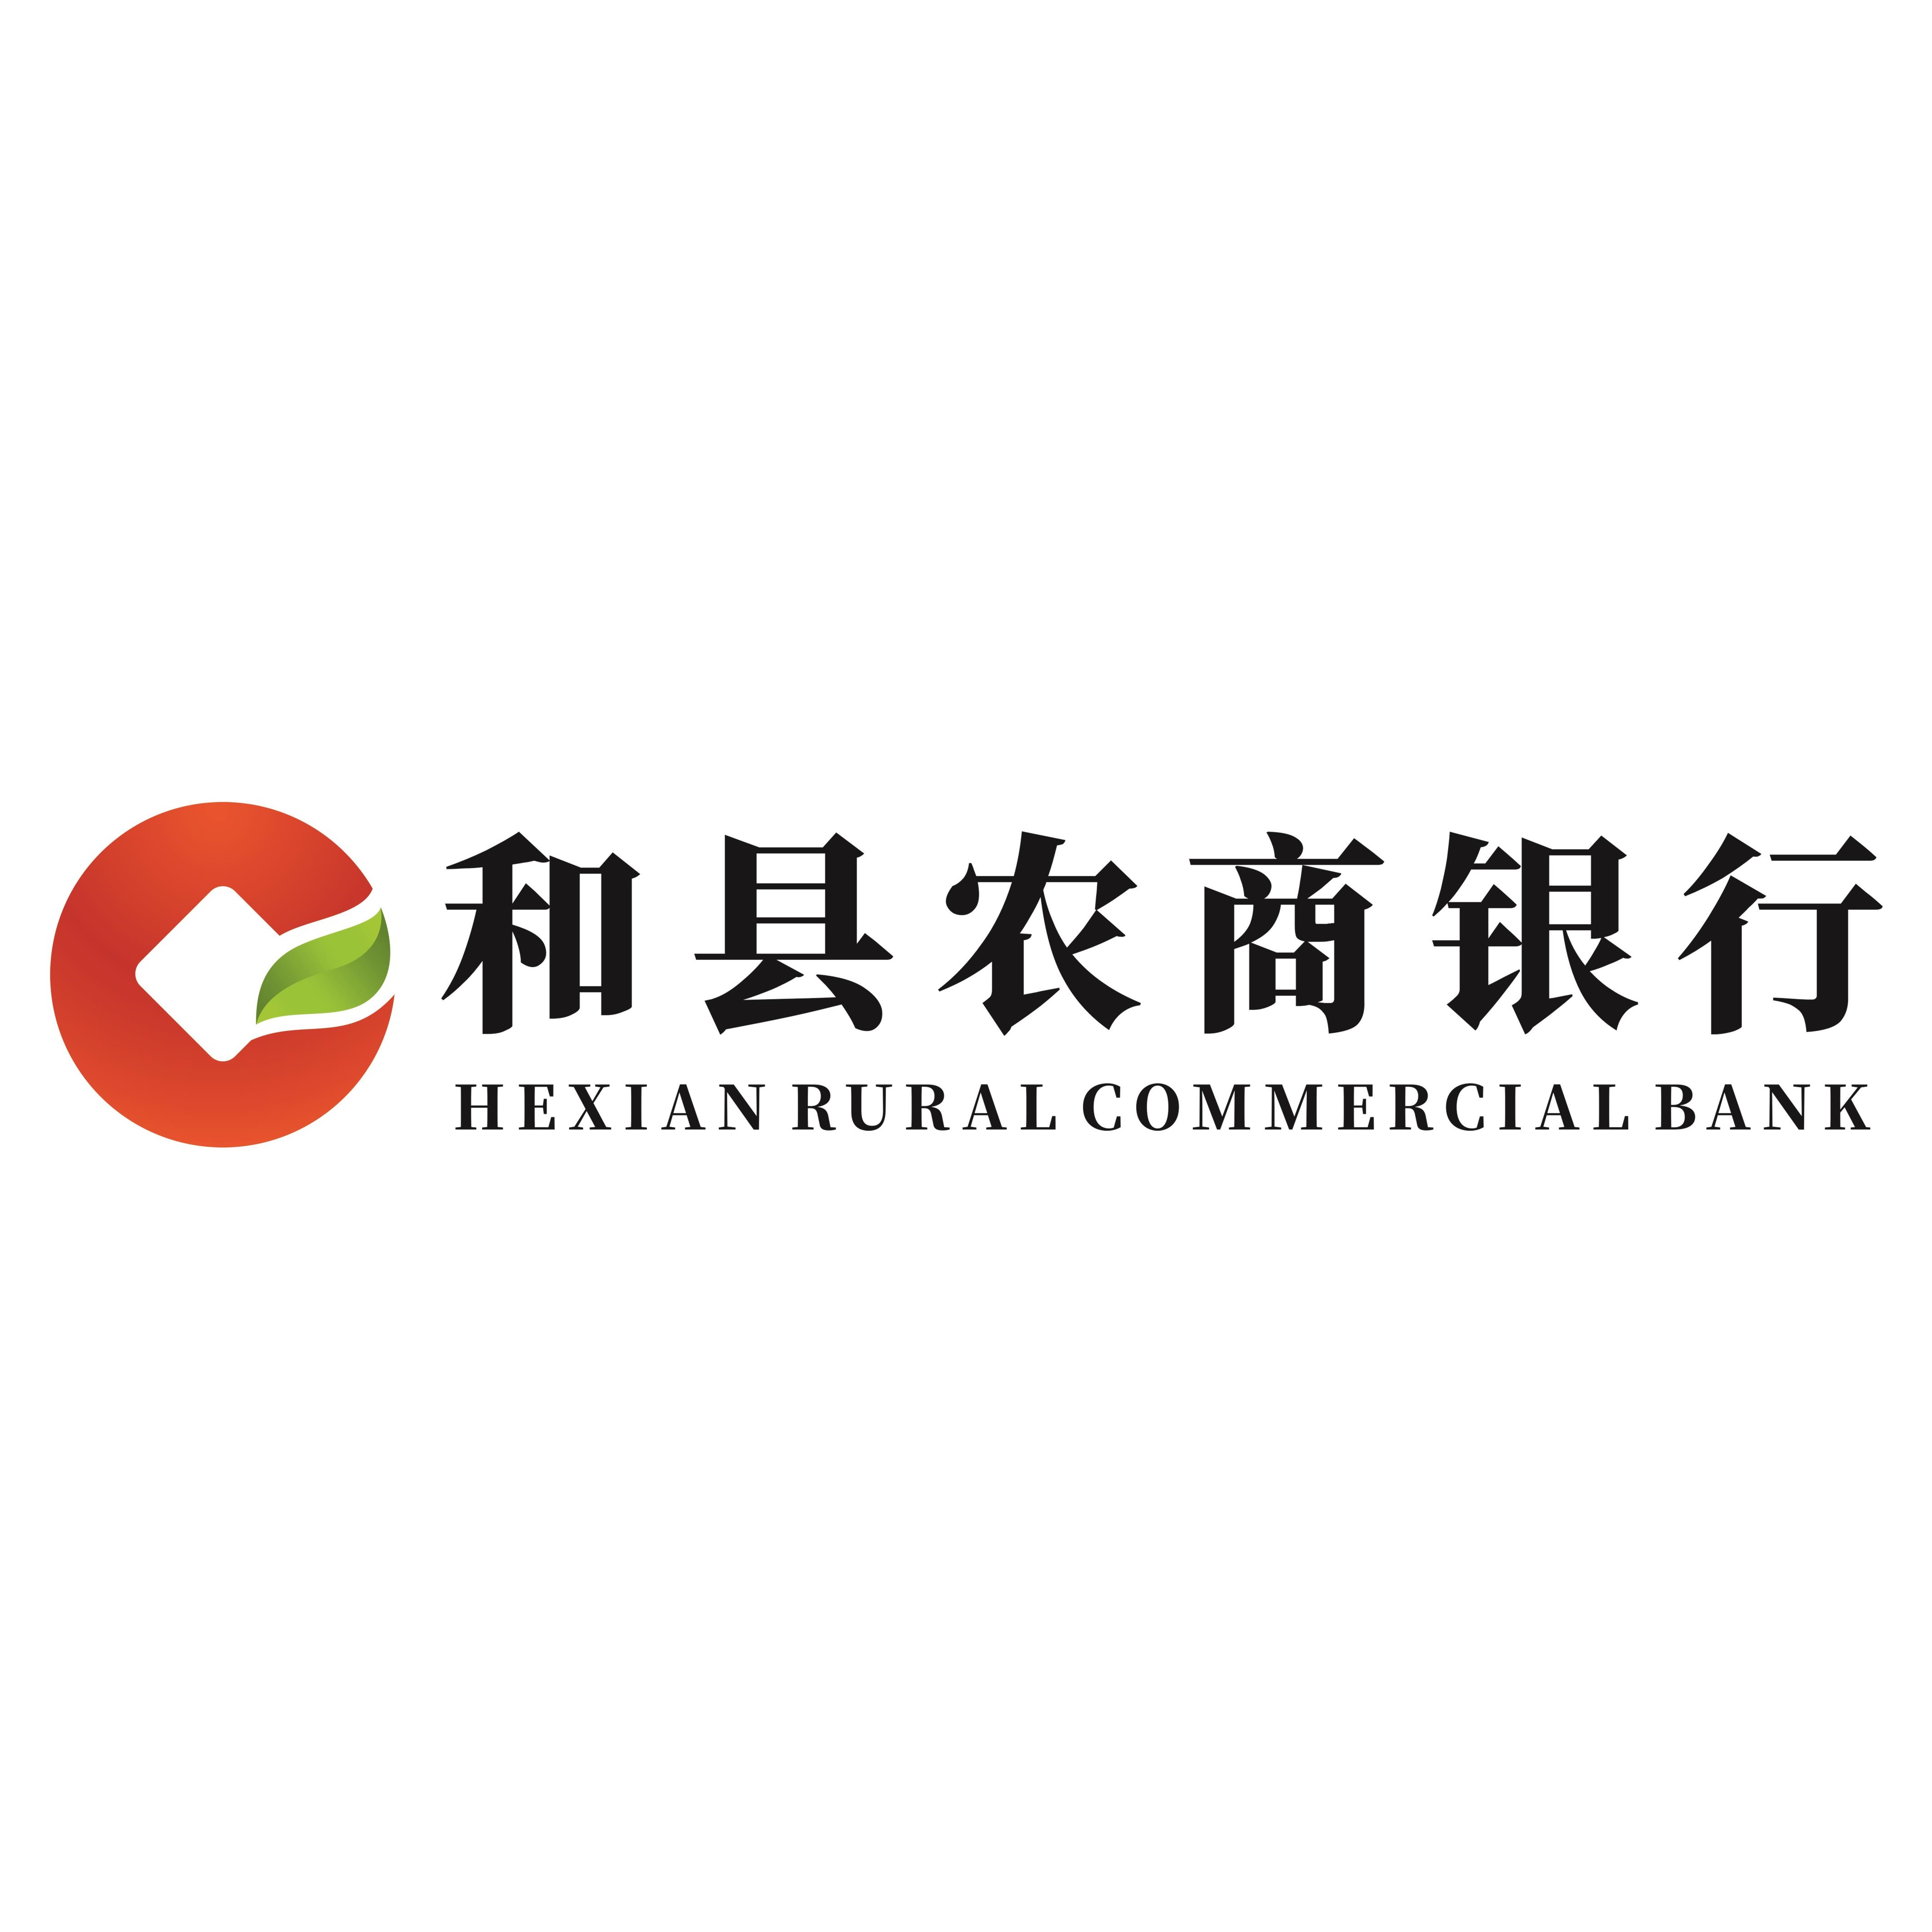 安徽和县农村商业银行股份有限公司西埠支行